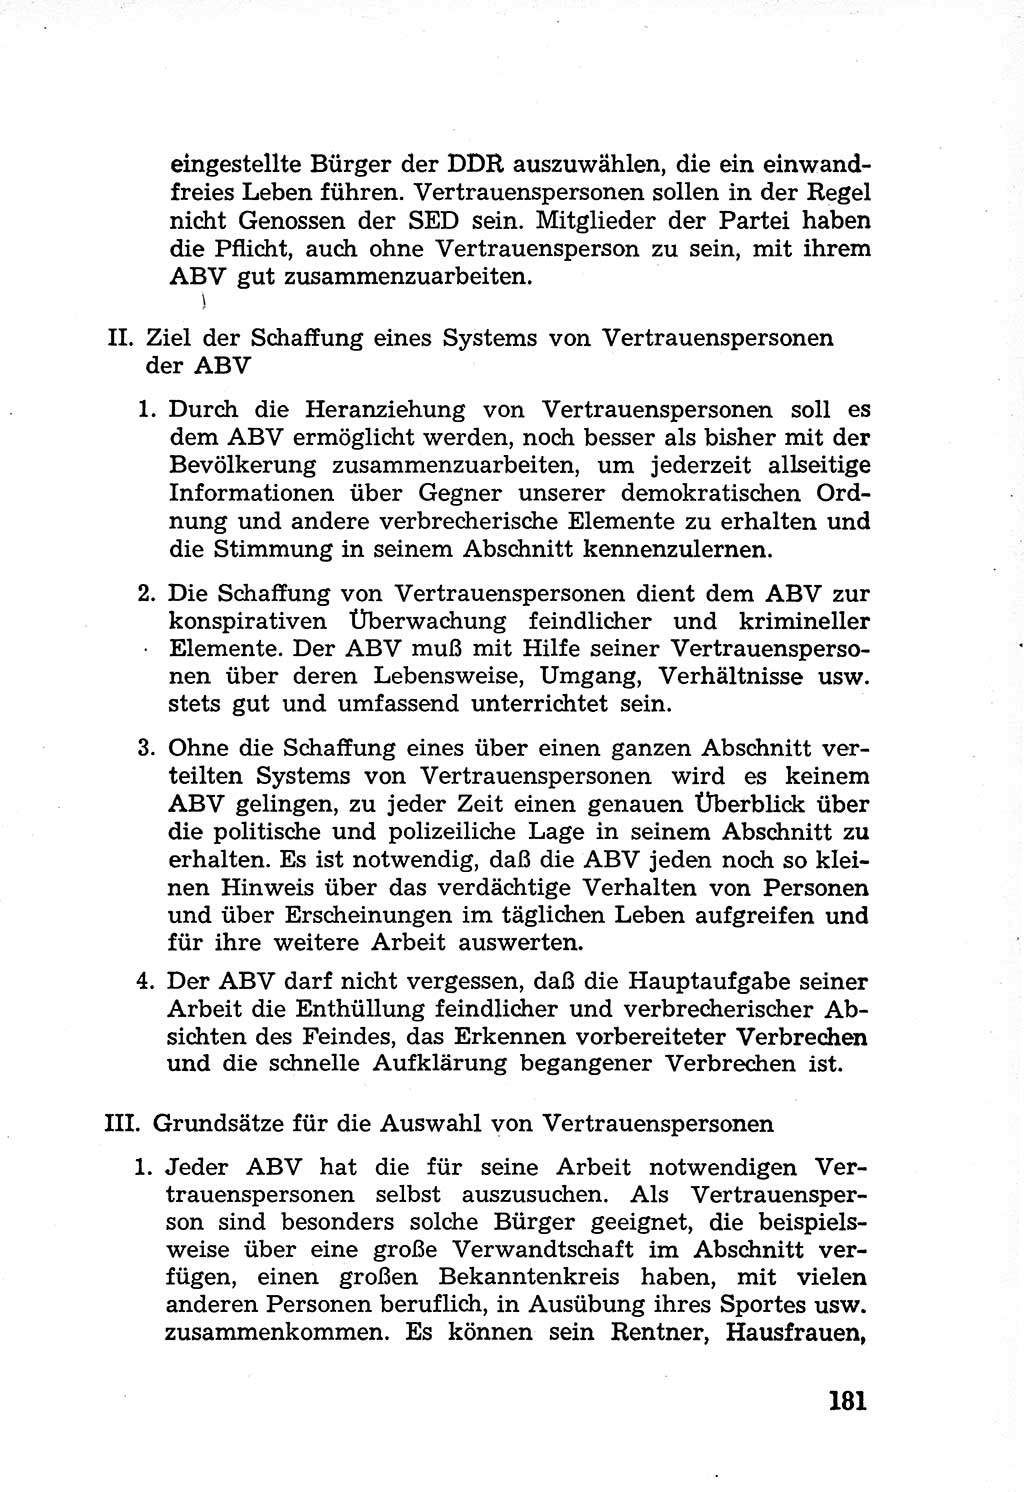 Rechtsstaat in zweierlei Hinsicht, Untersuchungsausschuß freiheitlicher Juristen (UfJ) [Bundesrepublik Deutschland (BRD)] 1956, Seite 181 (R.-St. UfJ BRD 1956, S. 181)